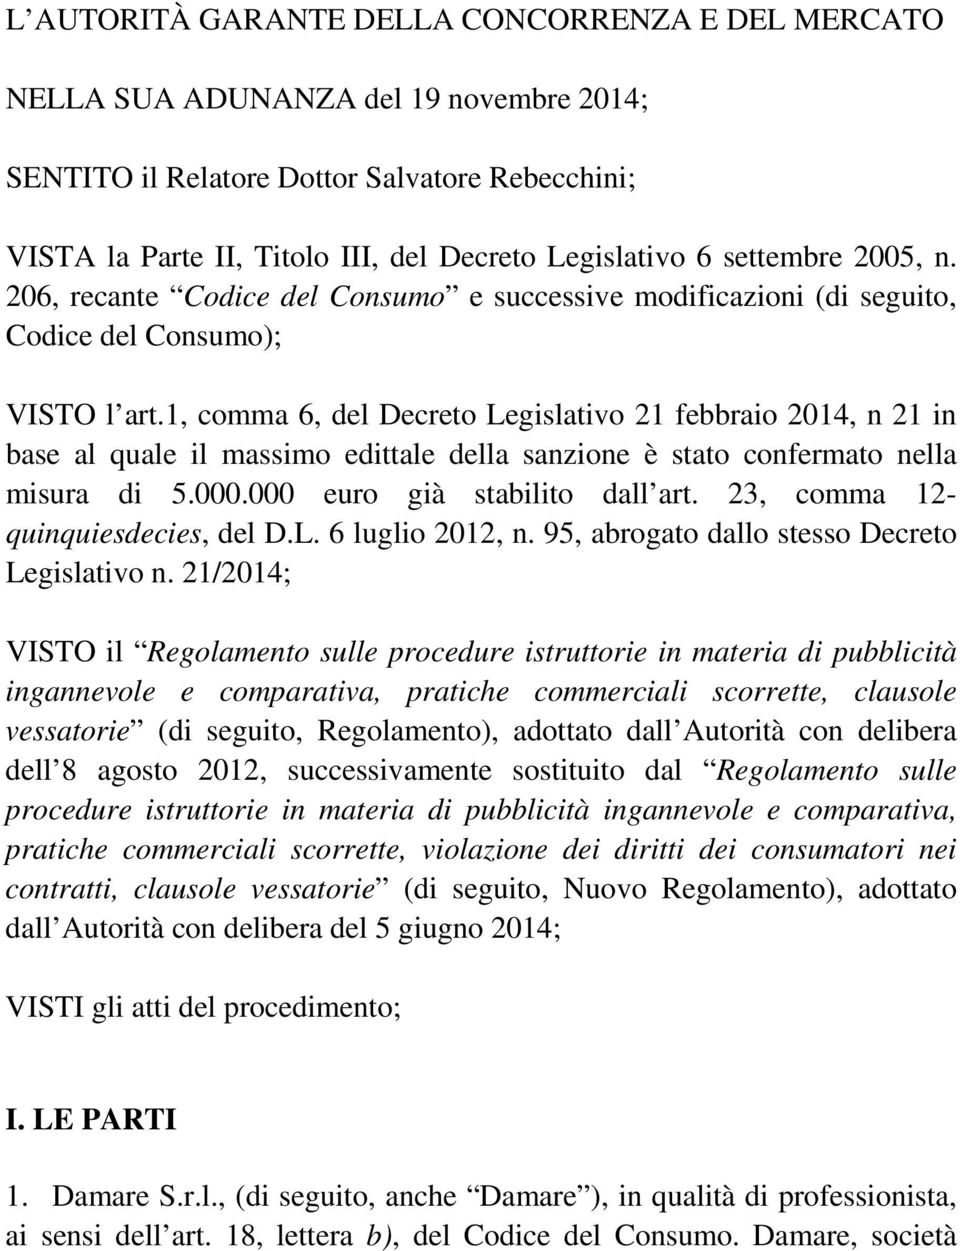 1, comma 6, del Decreto Legislativo 21 febbraio 2014, n 21 in base al quale il massimo edittale della sanzione è stato confermato nella misura di 5.000.000 euro già stabilito dall art.